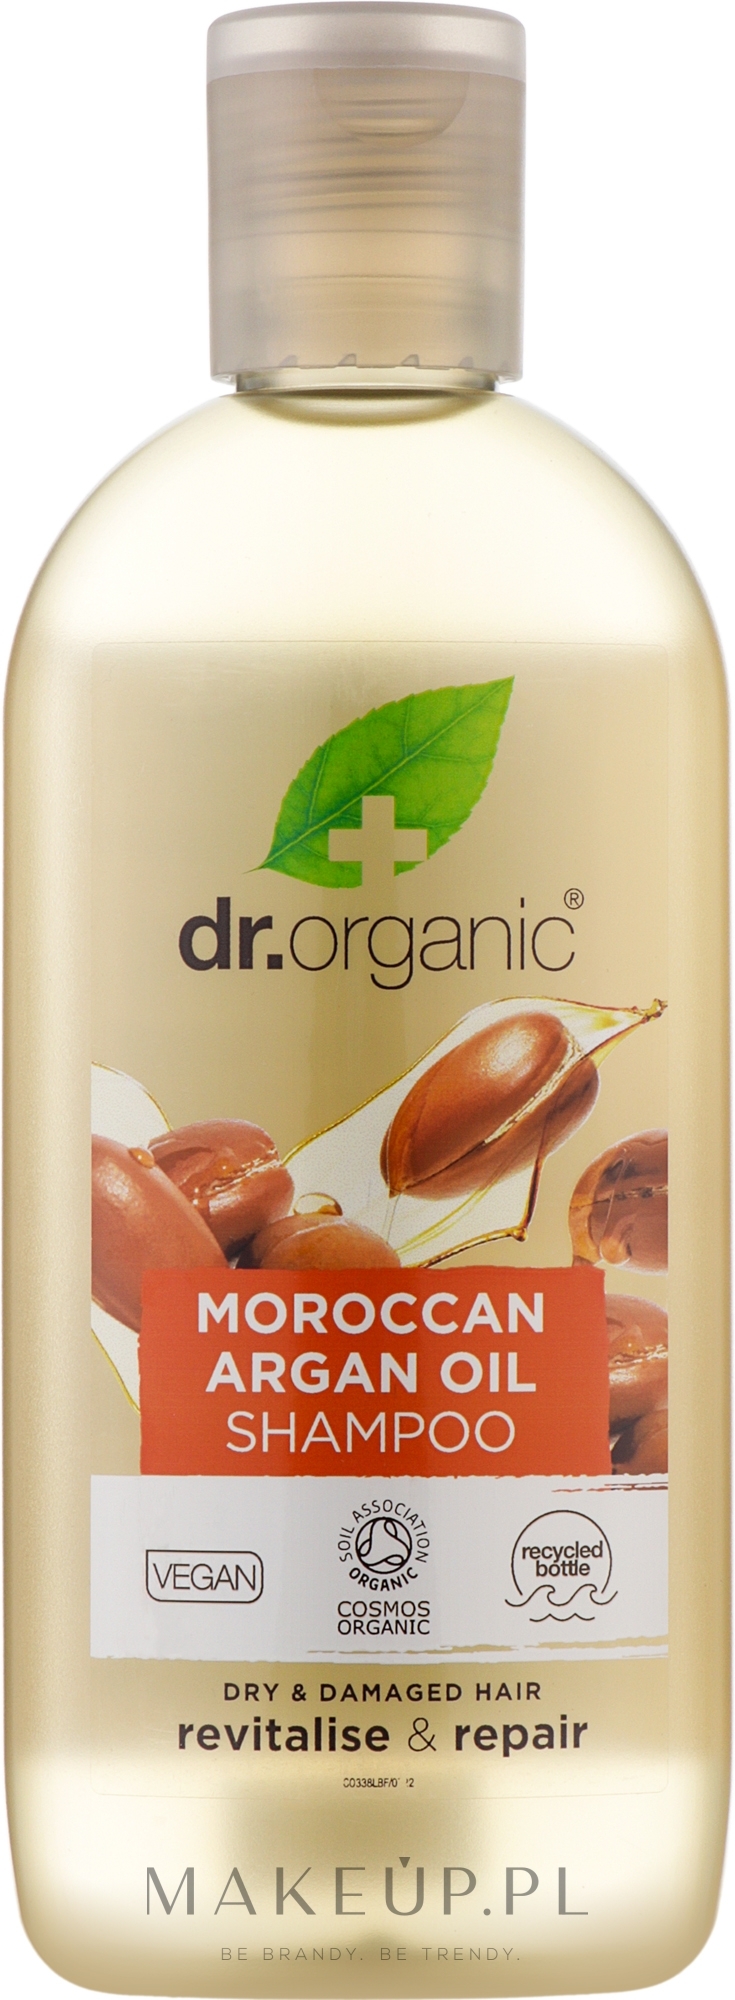 dr organic szampon wizaz